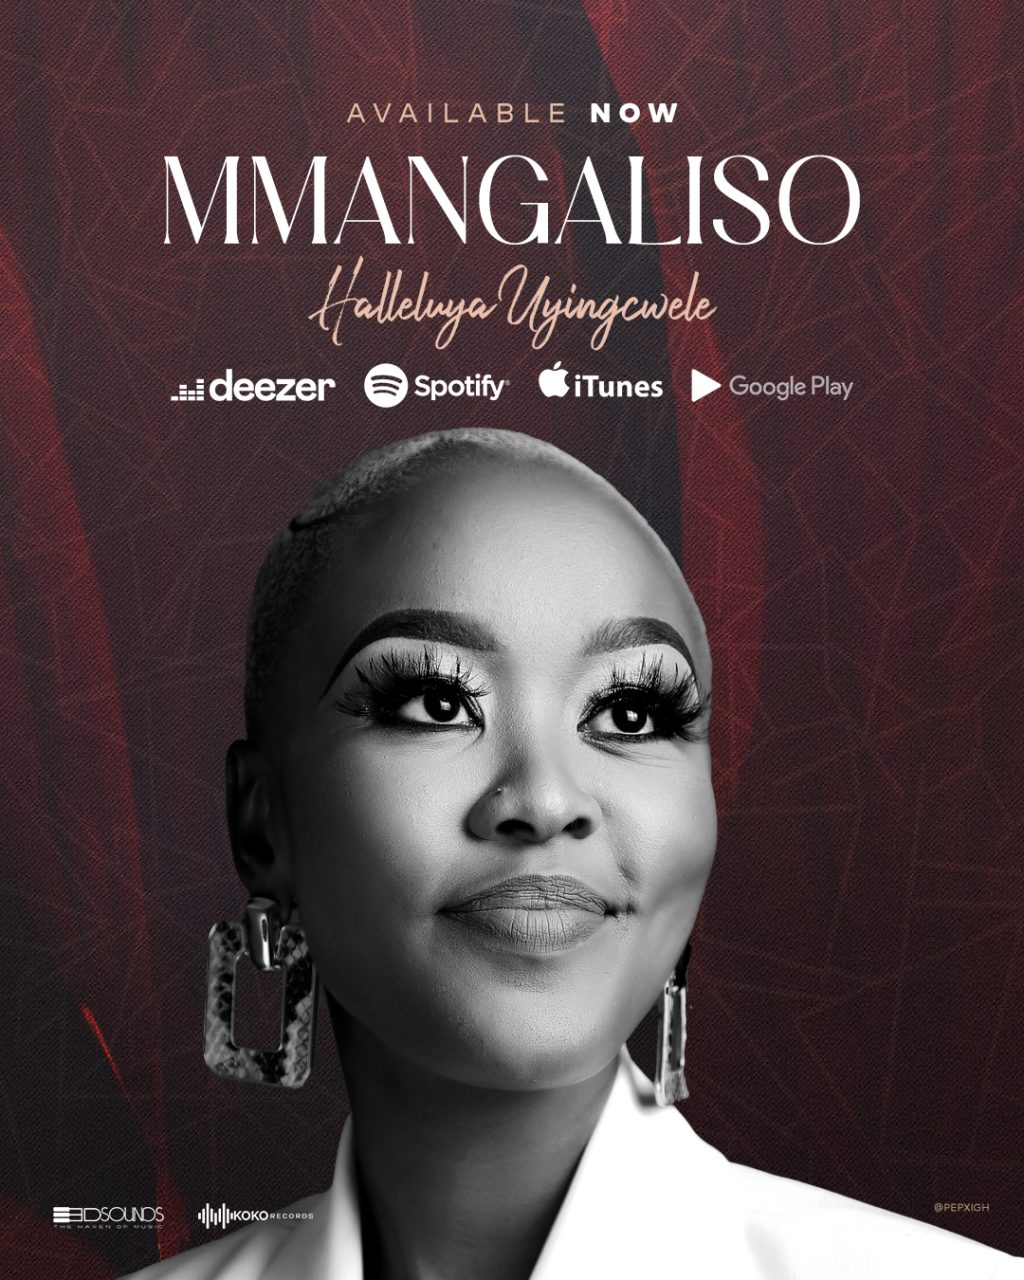 Mmangaliso - Halelujah Uyingcwele Cover Artwork